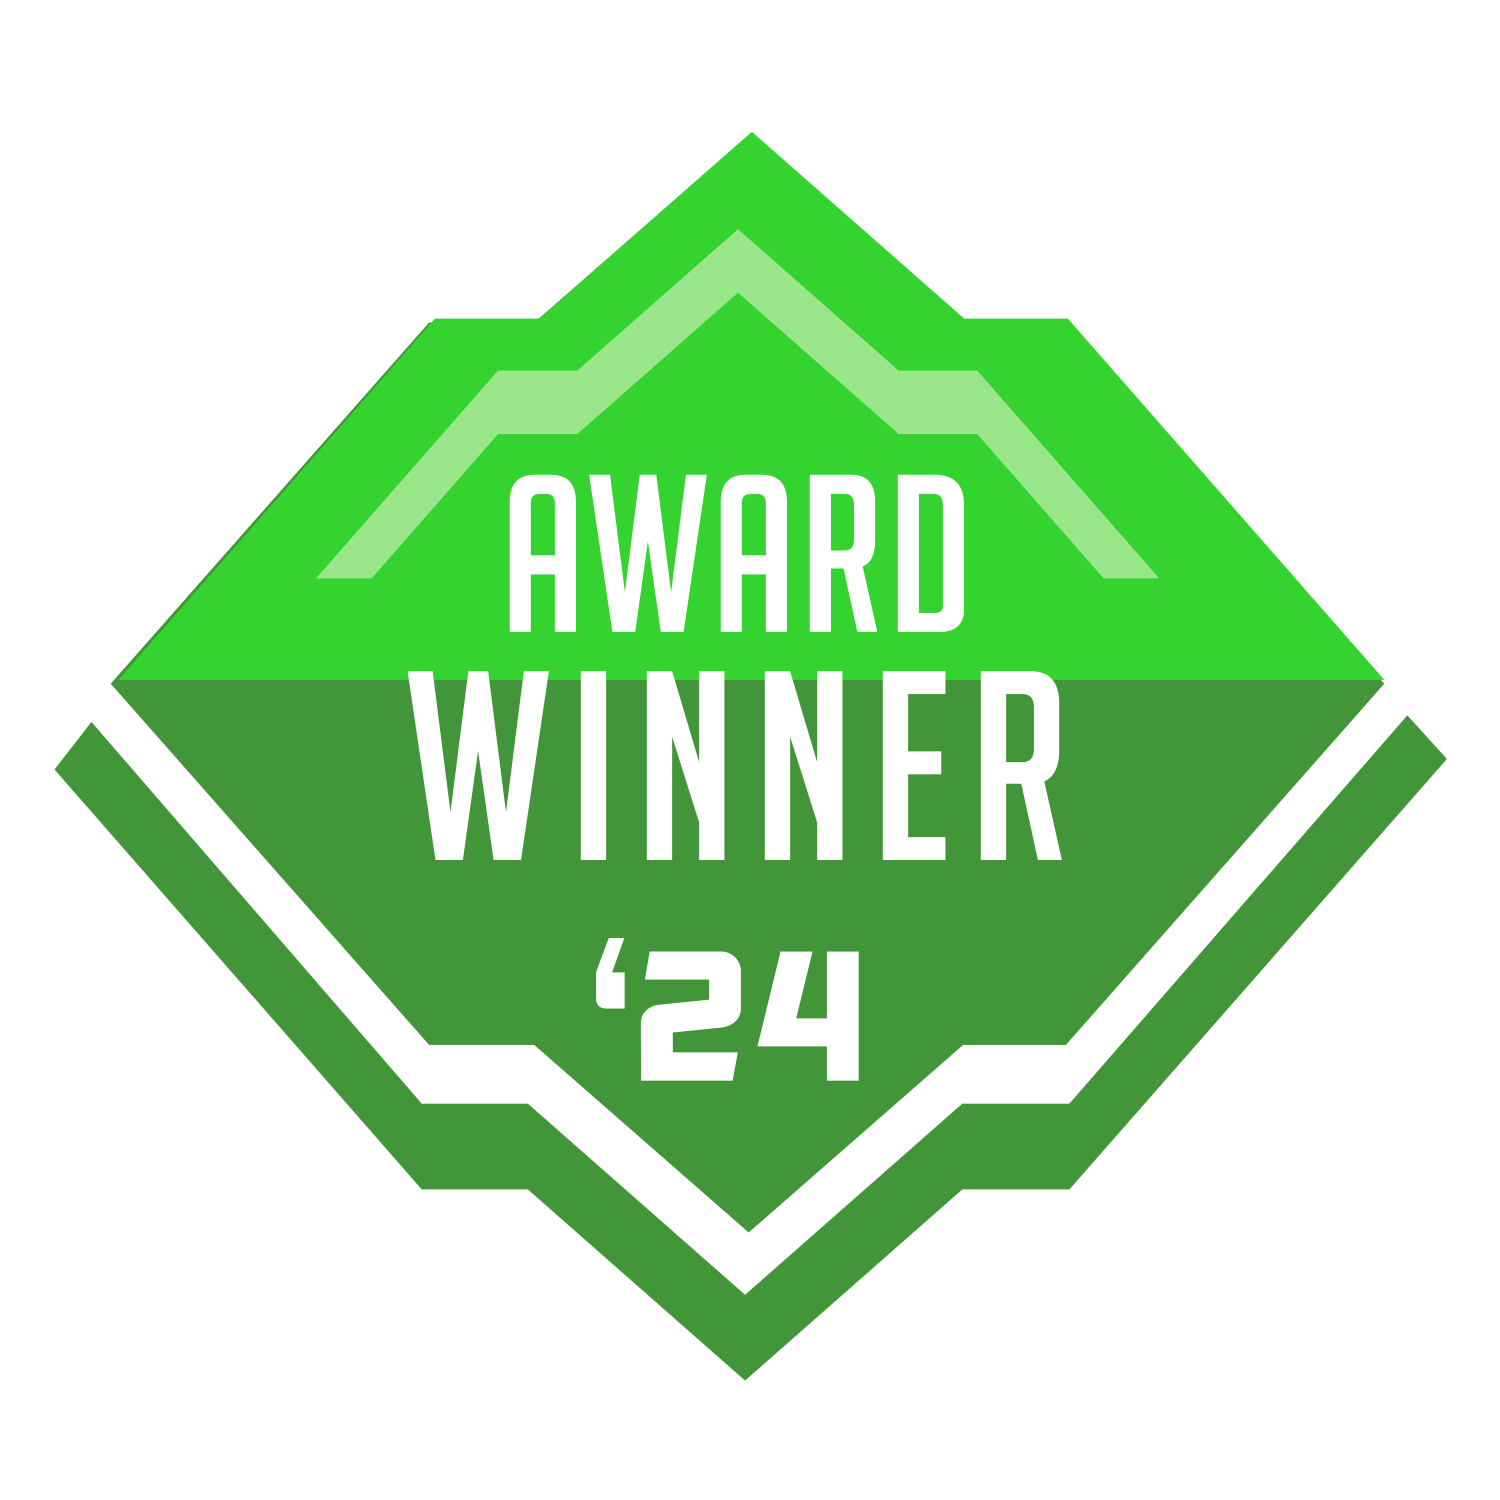 award winner 24 badge